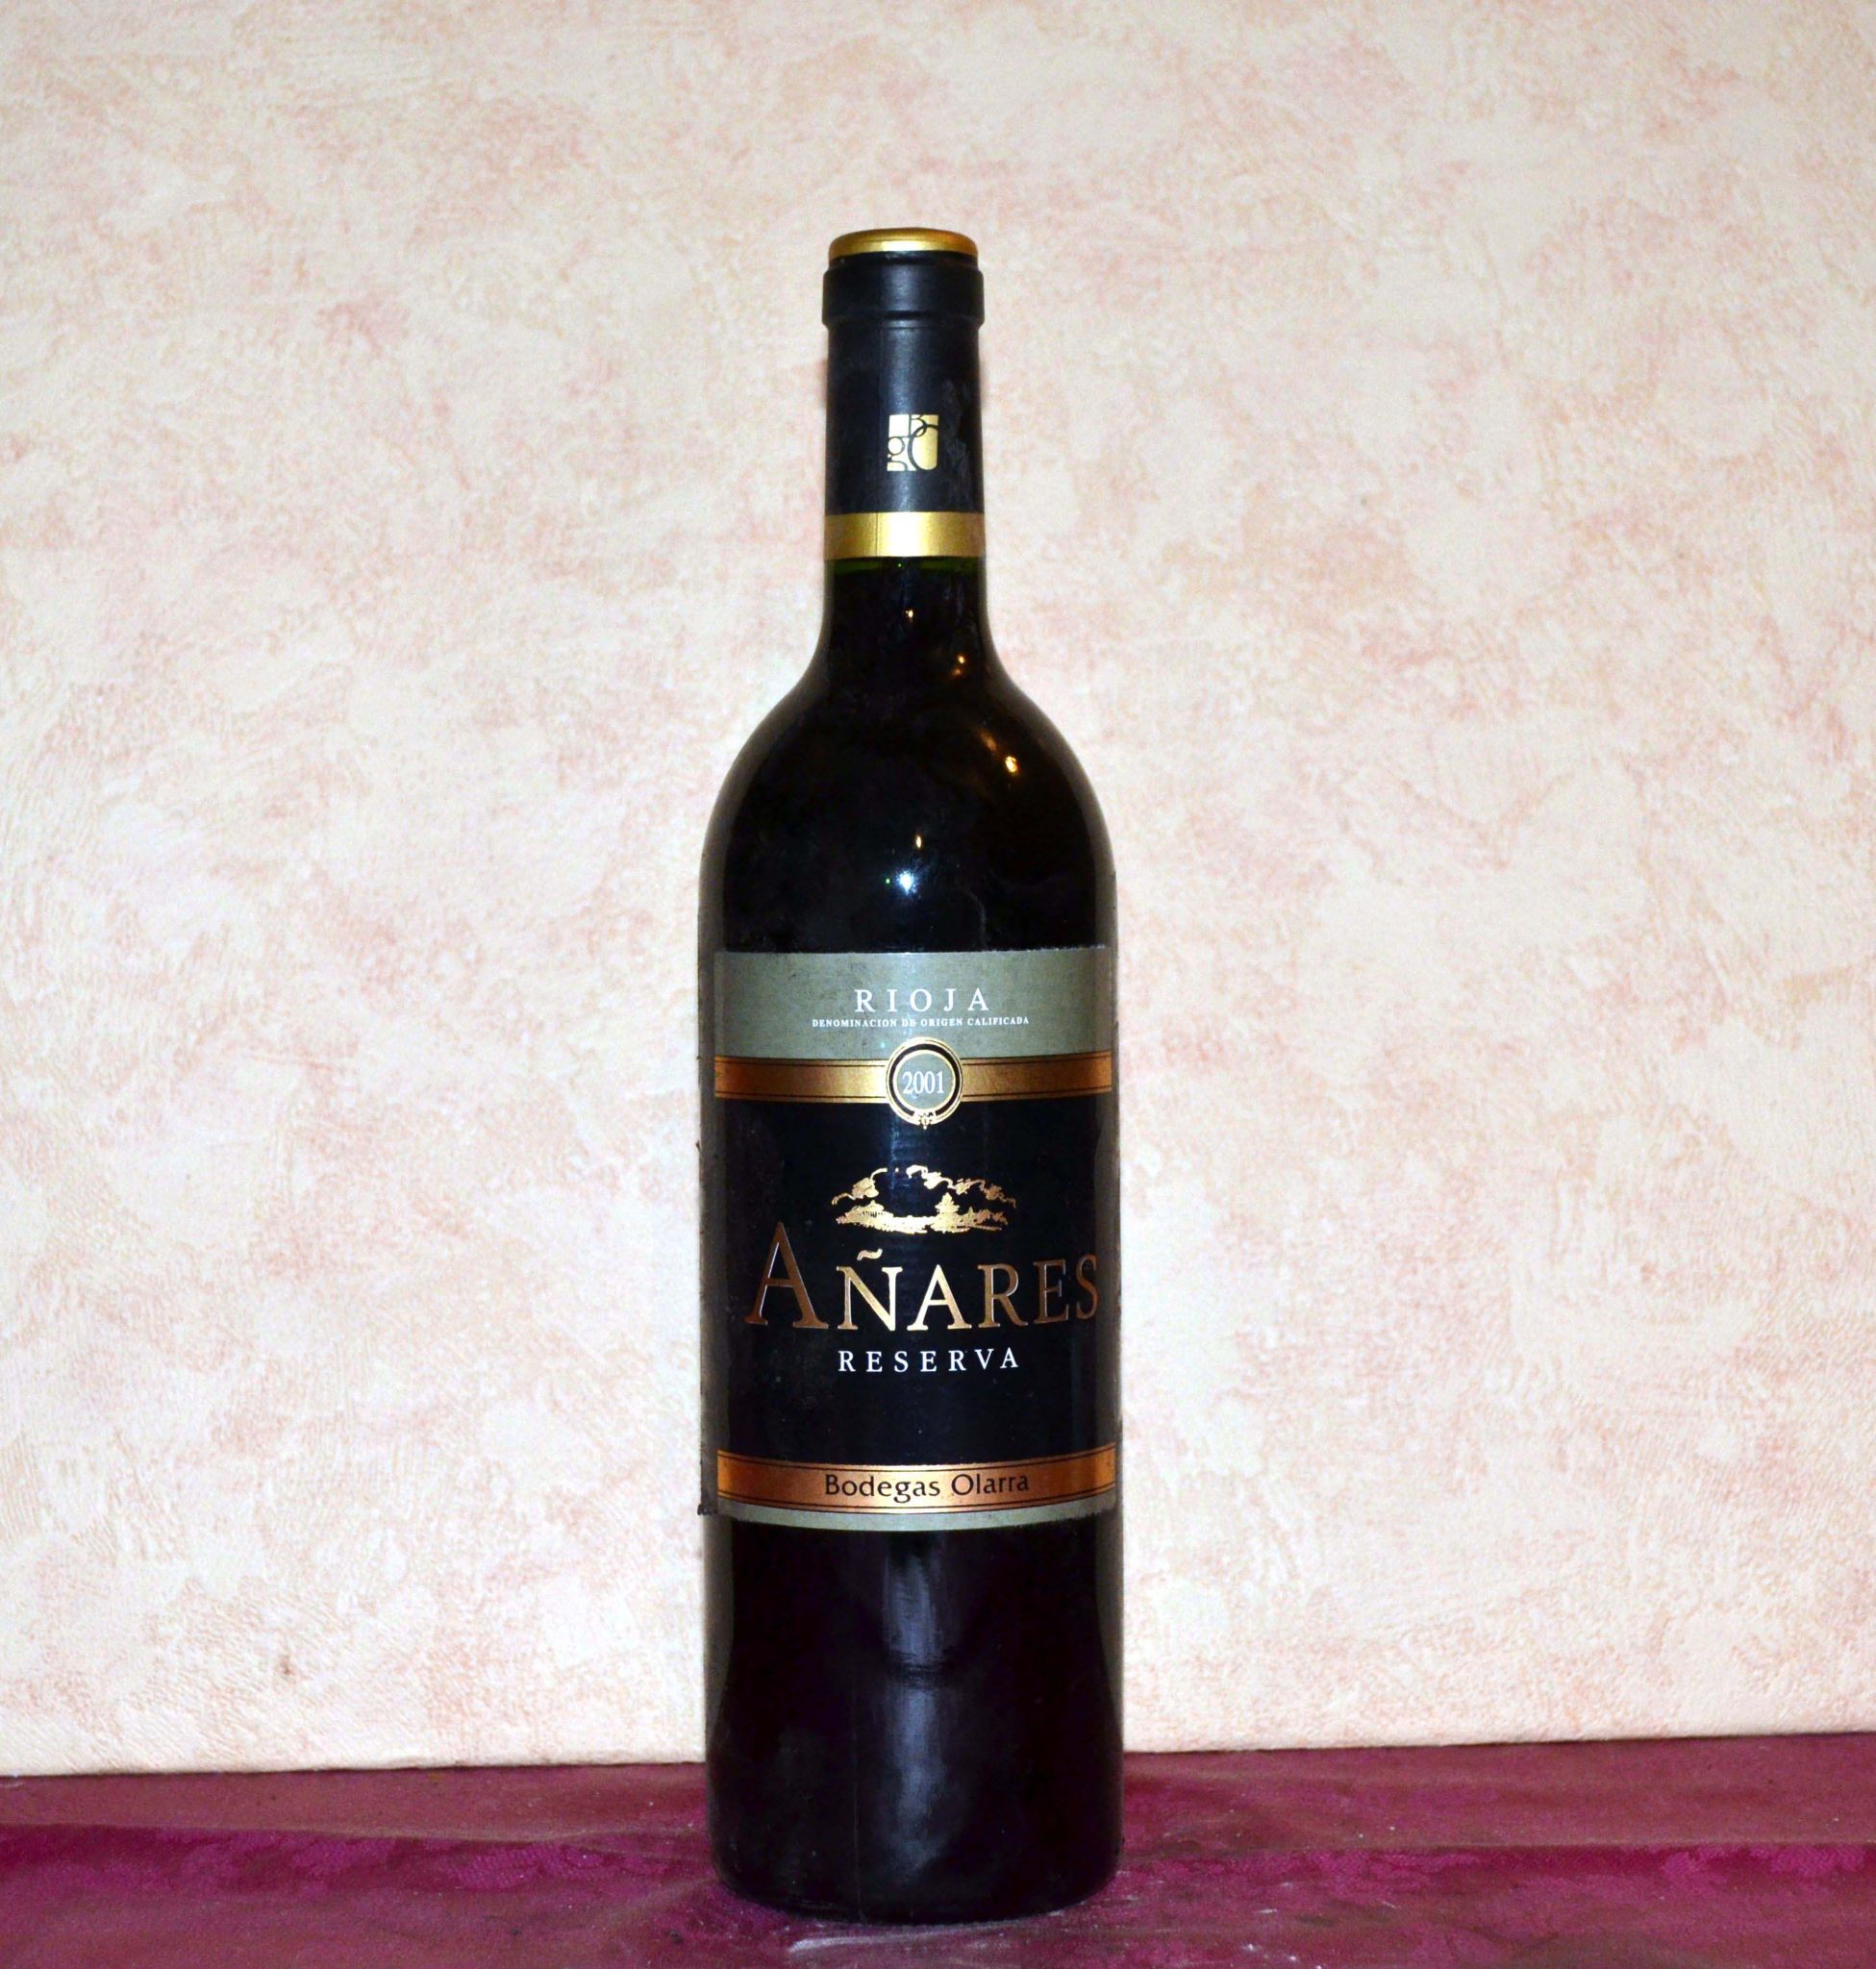 Añares Reserva 2001